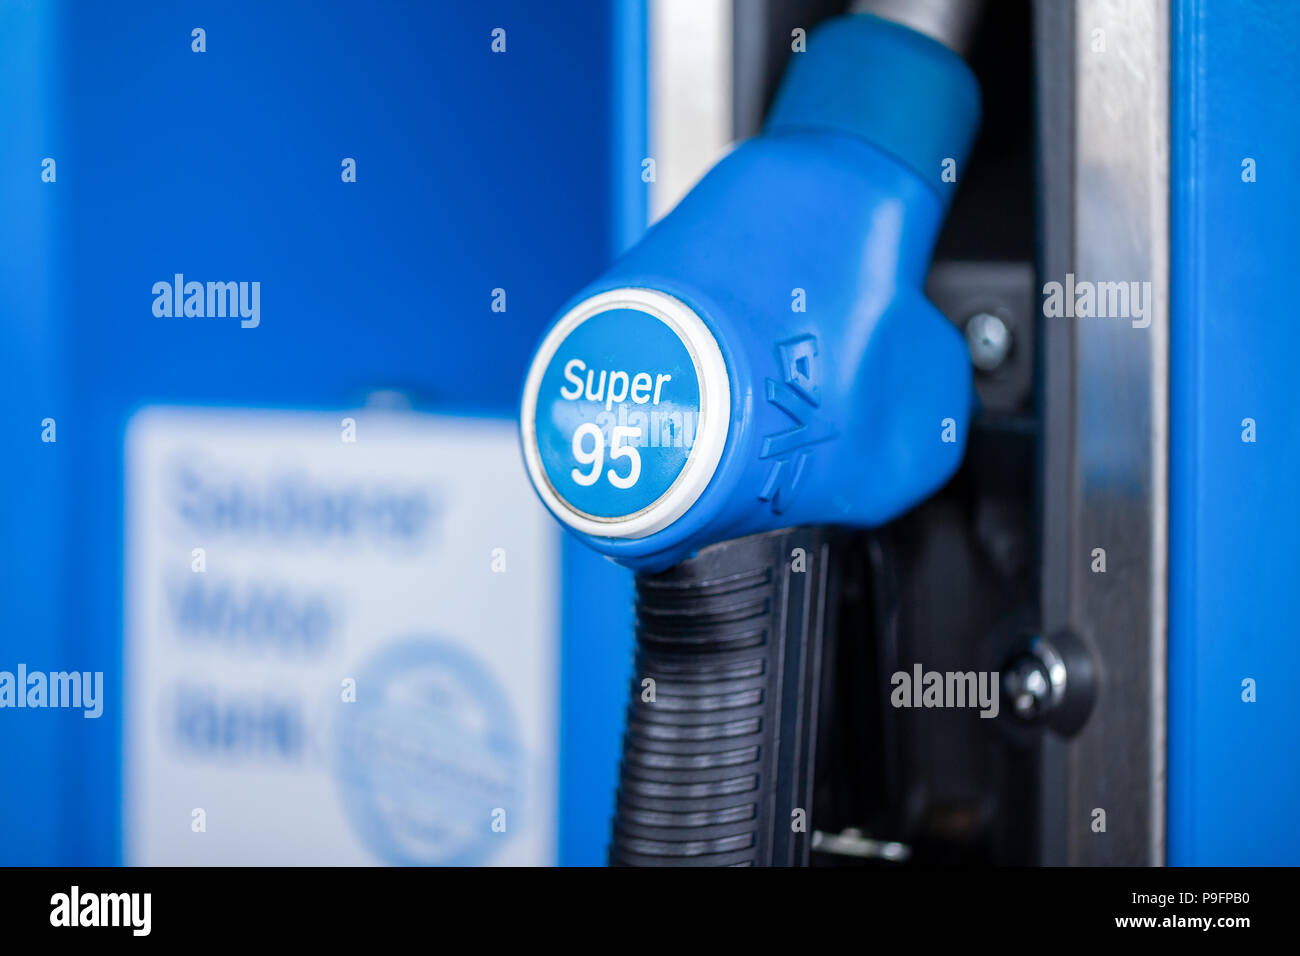 Nürnberg / ALLEMAGNE - Mars 11, 2018 : distributeur de carburant à l'essence super 95, à partir de la station essence Aral. Leman est une marque de carburants automobiles. Banque D'Images